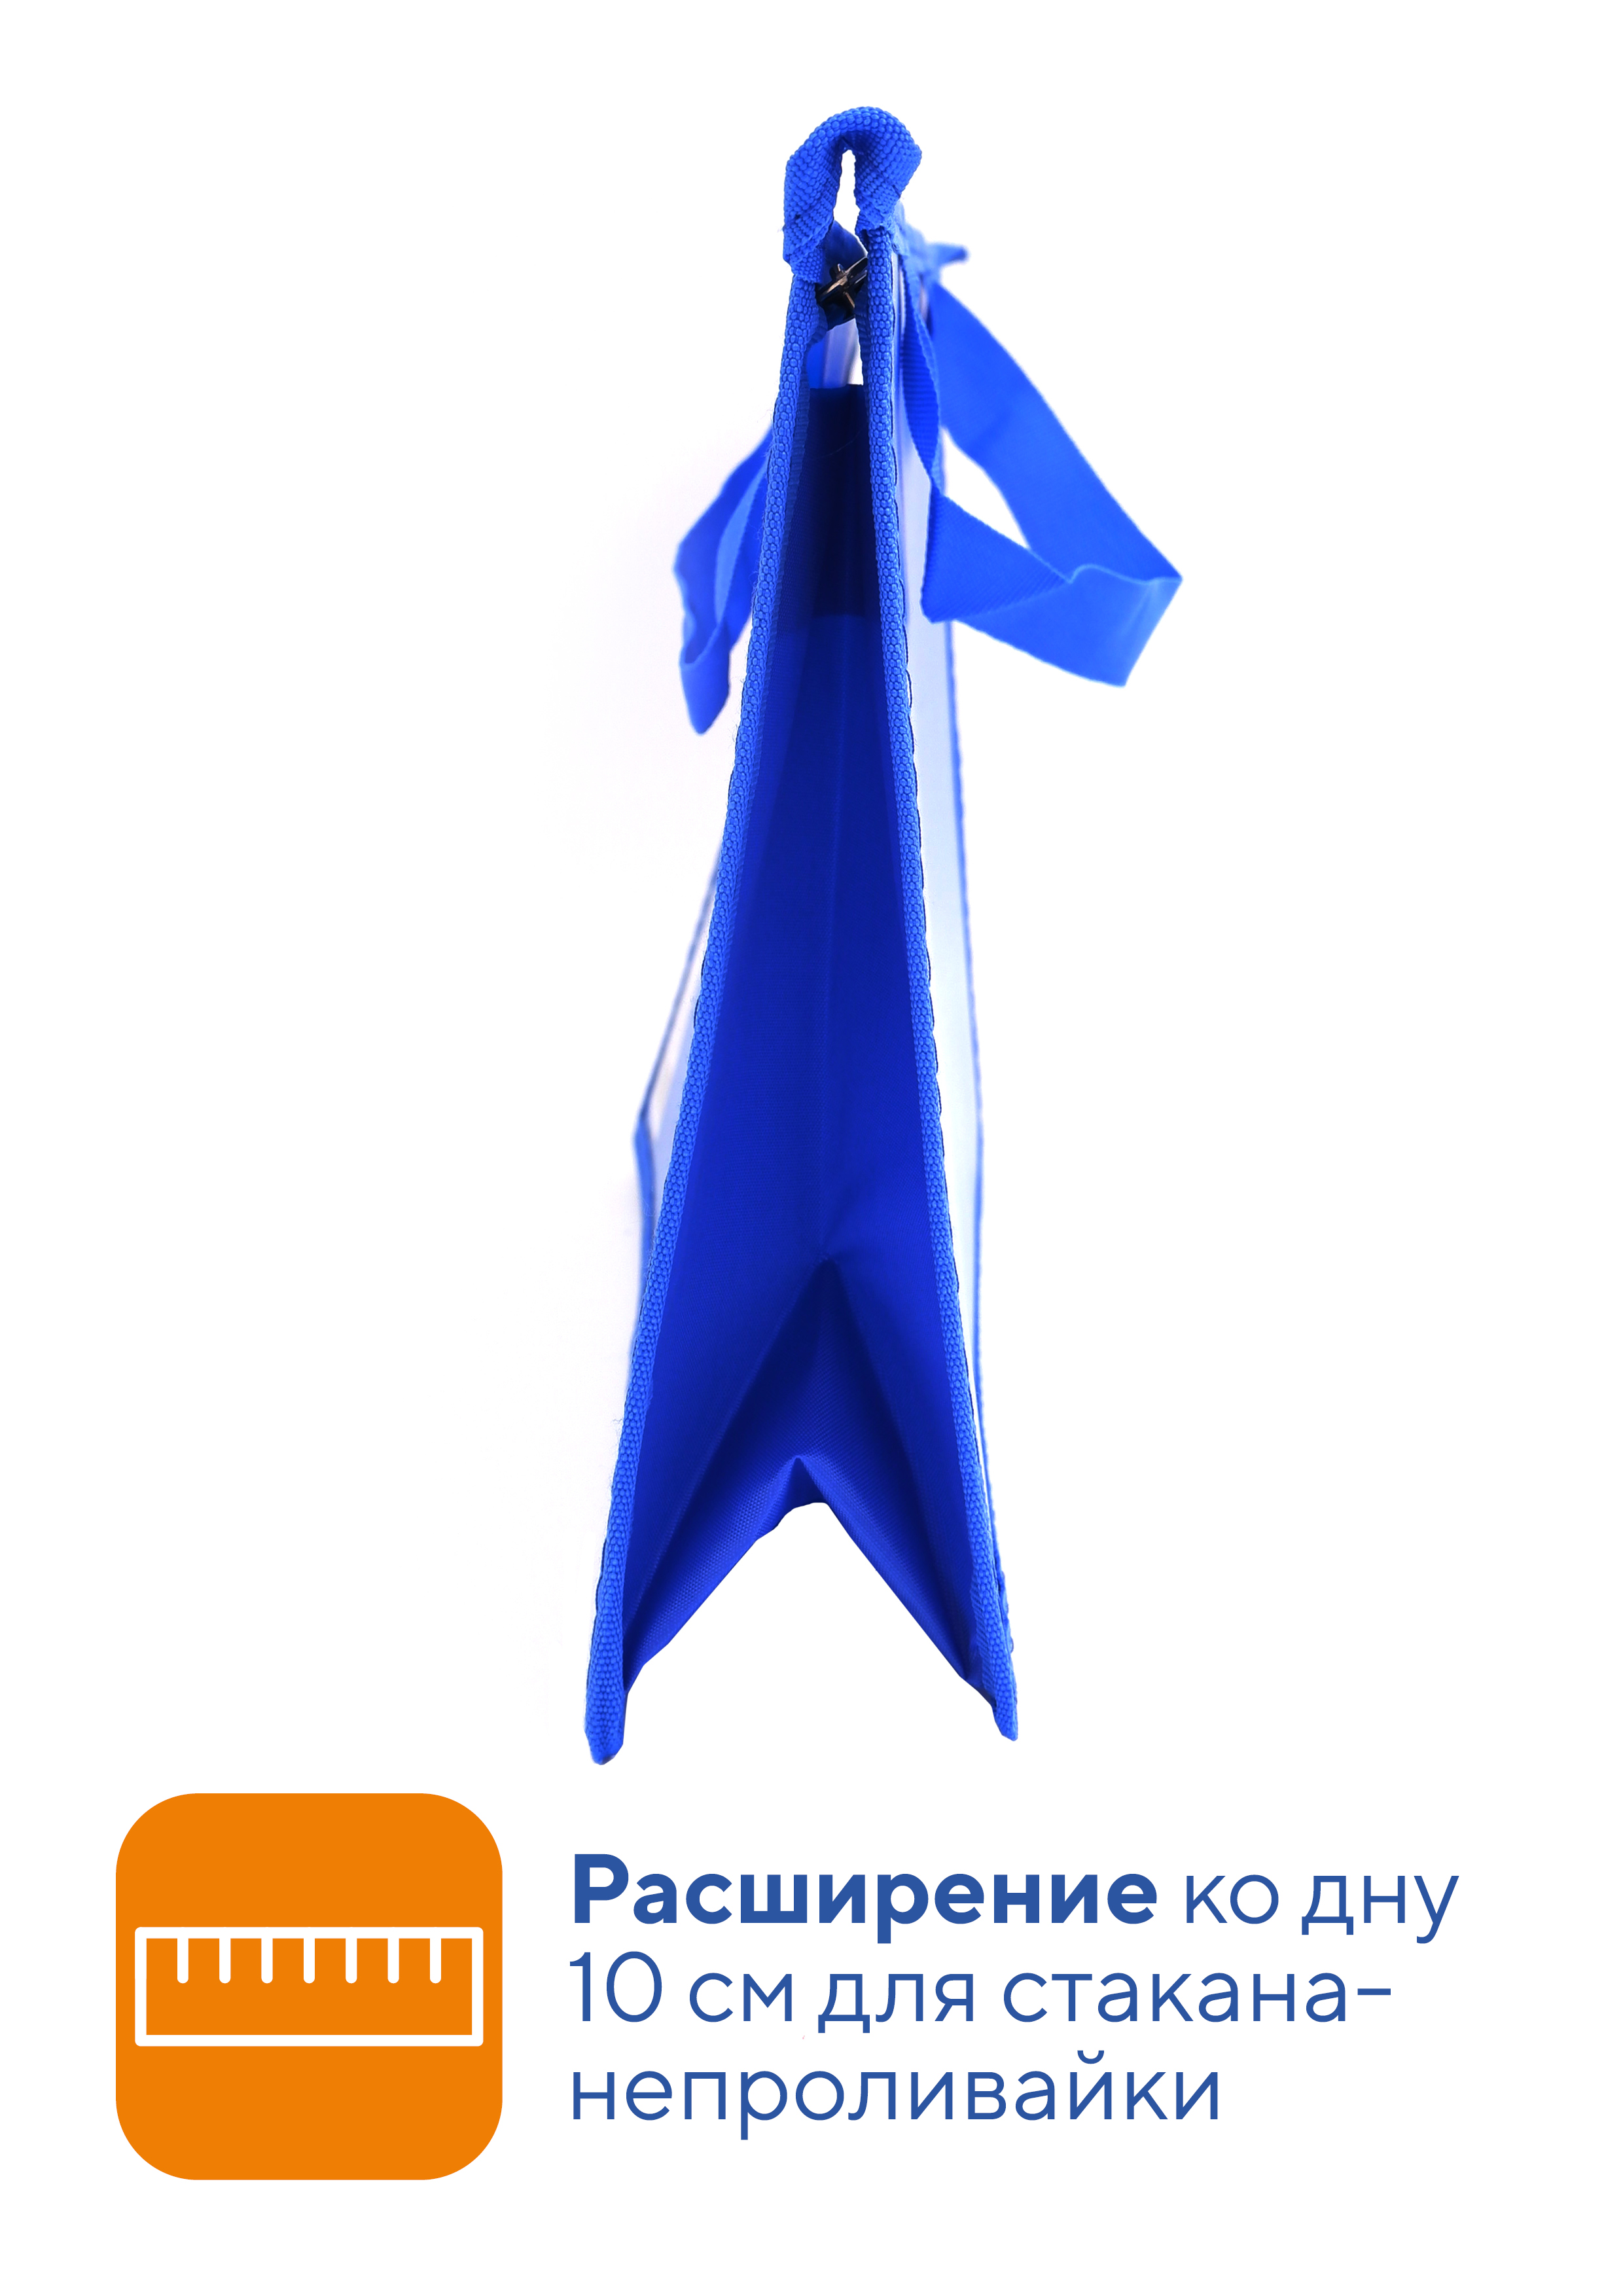 Папка для труда WORKMATE А4 с ручками пластиковая синий василек не прозрачная 33х23х10 см - фото 3